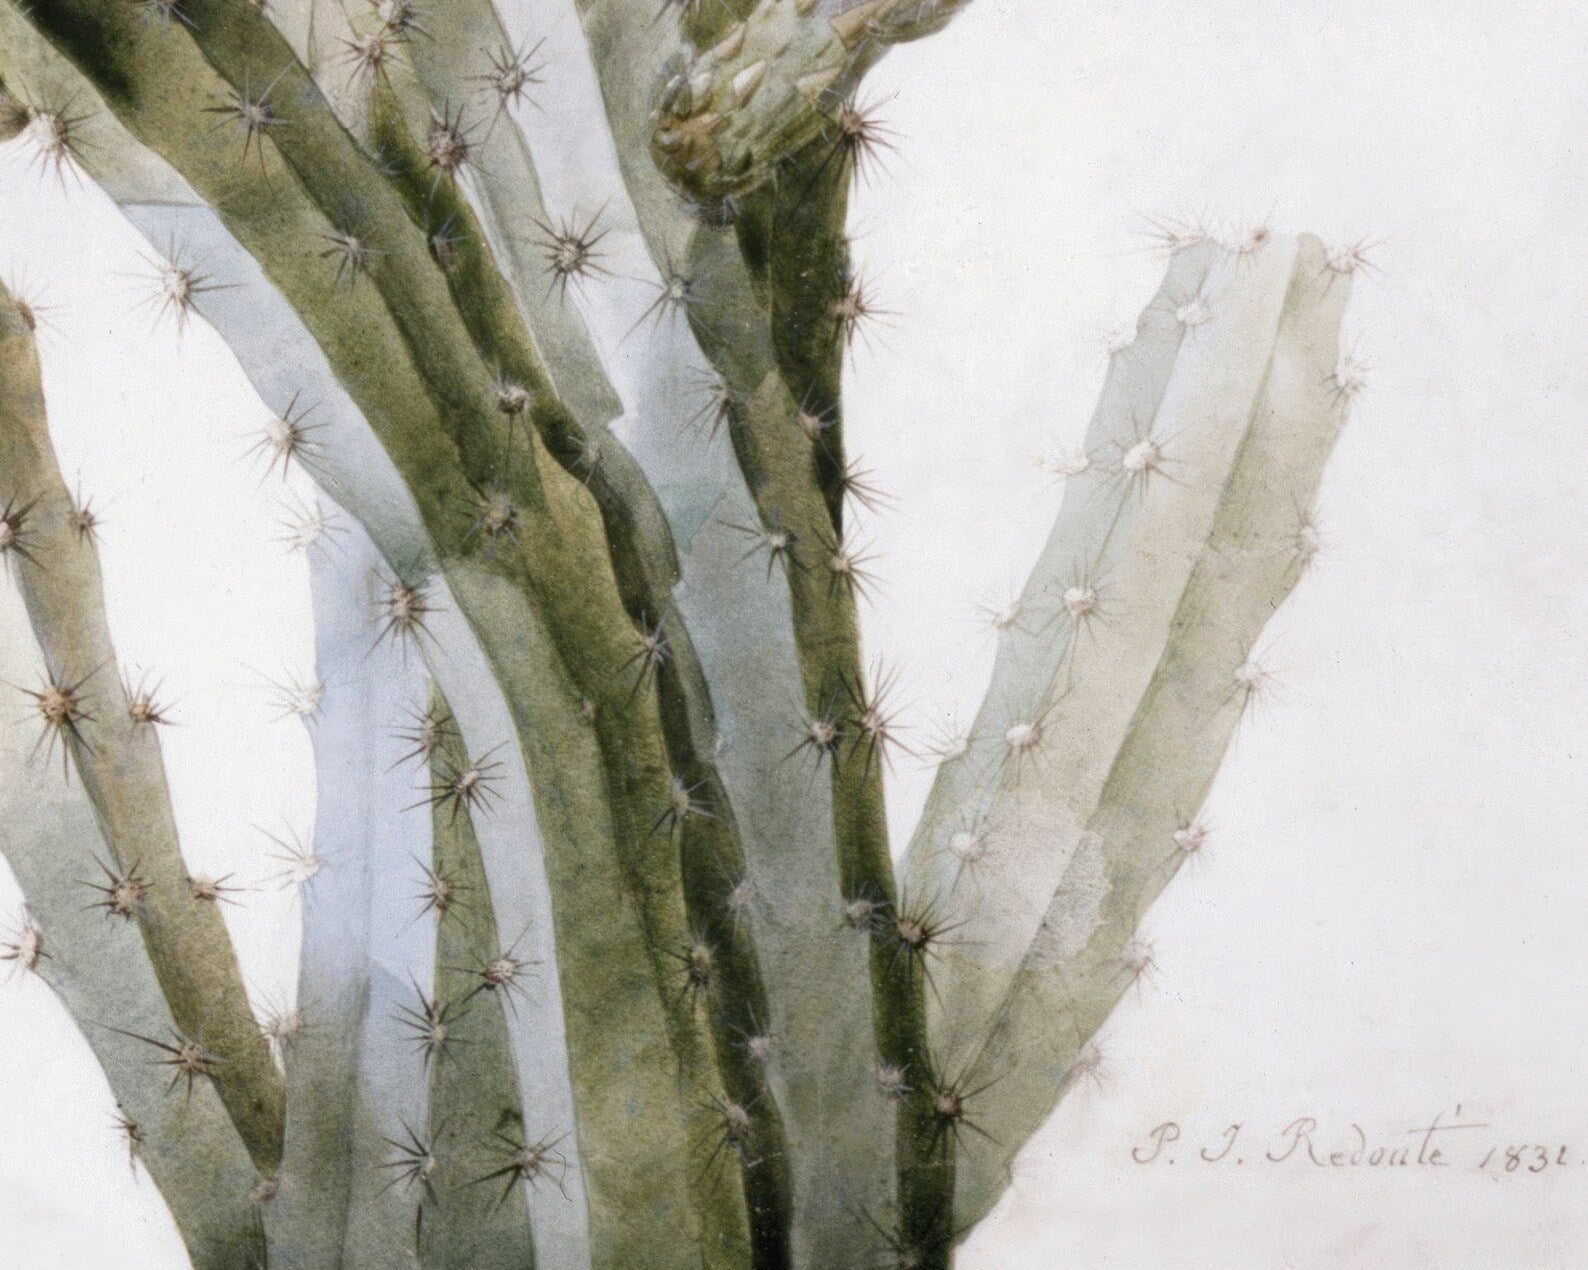 Pierre - Joseph Redouté "A Flowering Cactus: Heliocereus Speciosus" (c.1831) Vintage Botanical - Mabon Gallery